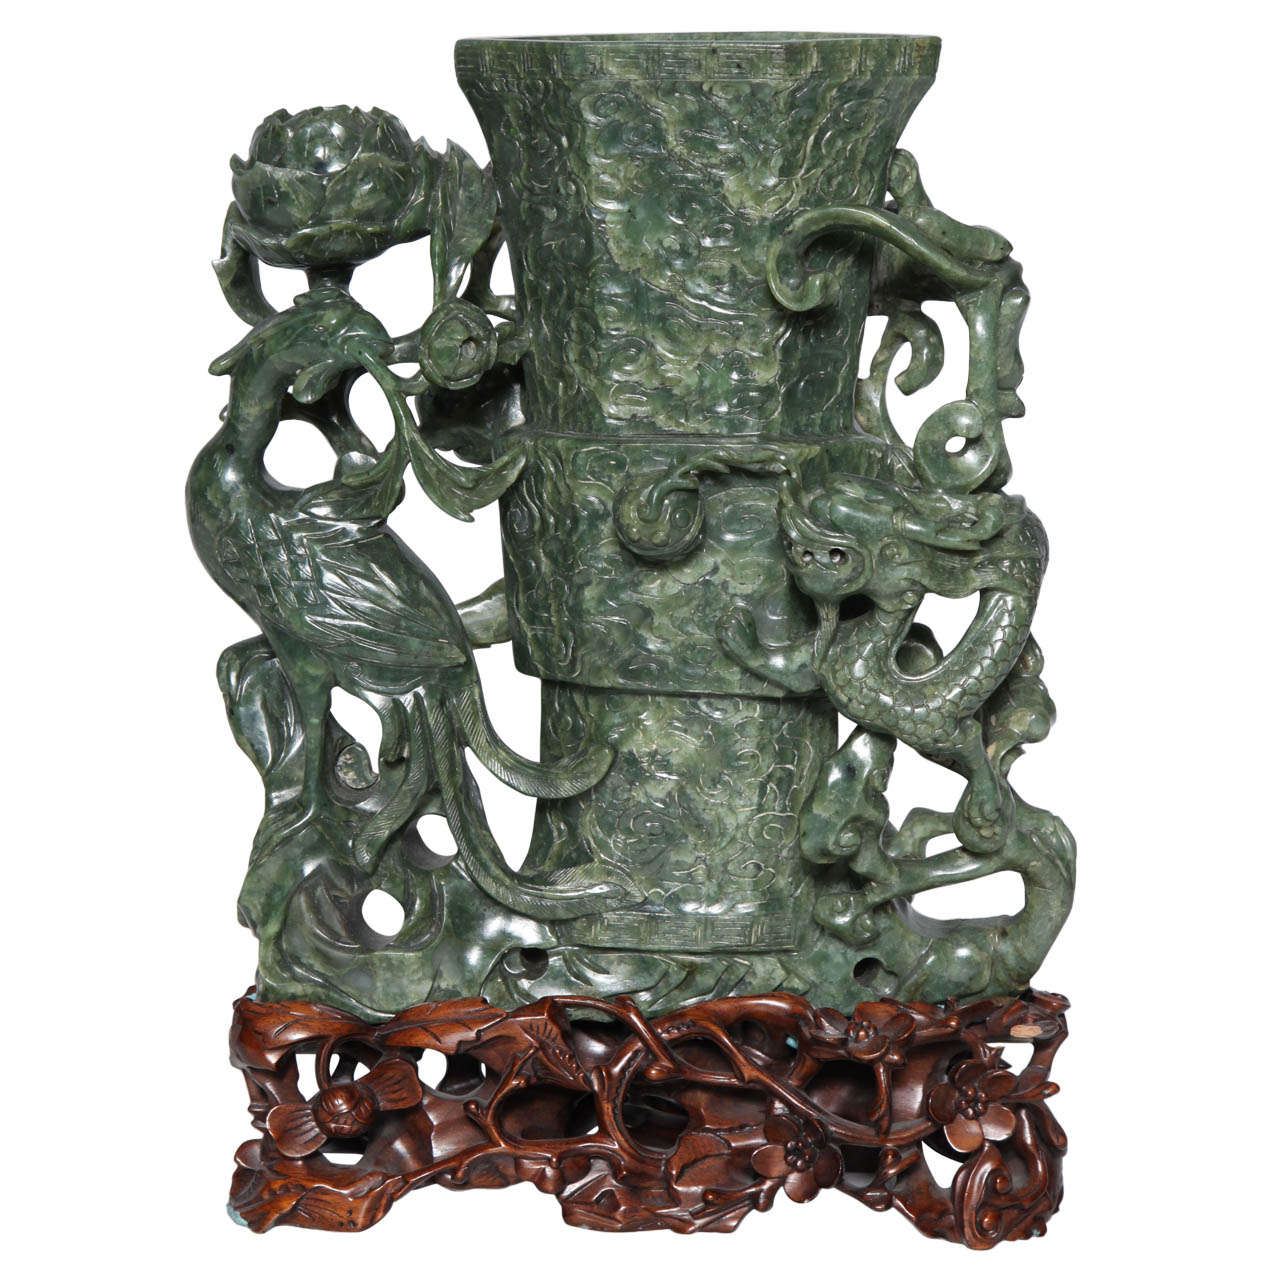 Vase chinois en jade épinard avec oiseau phénix et dragon représentant l'immortalité